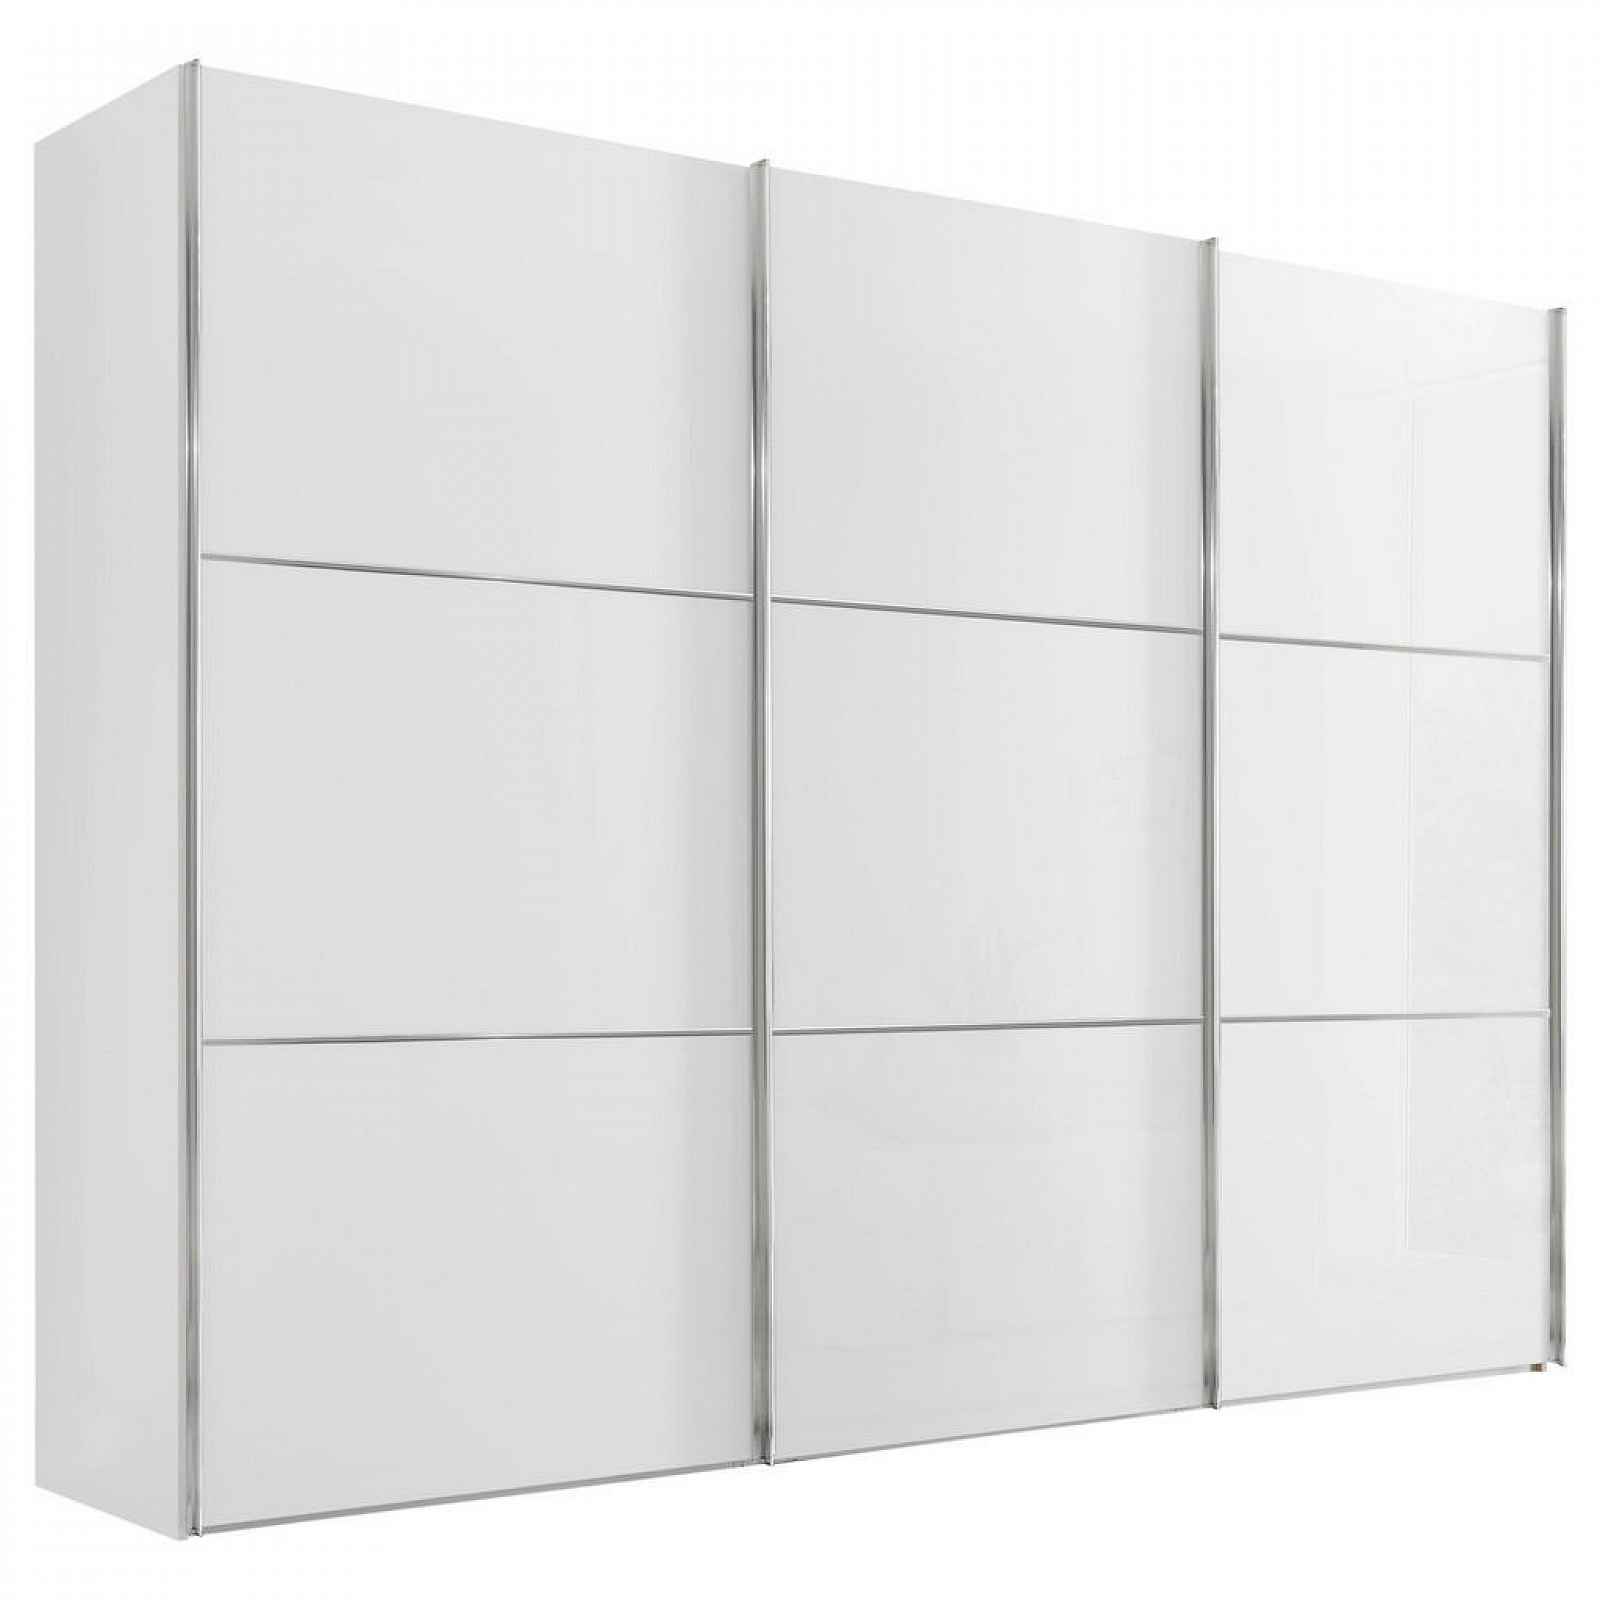 Moderano SCHWEBETÜRENSCHRANK Glasfront, bílá, 249/222/68 cm - Šatní skříně - 000531006076